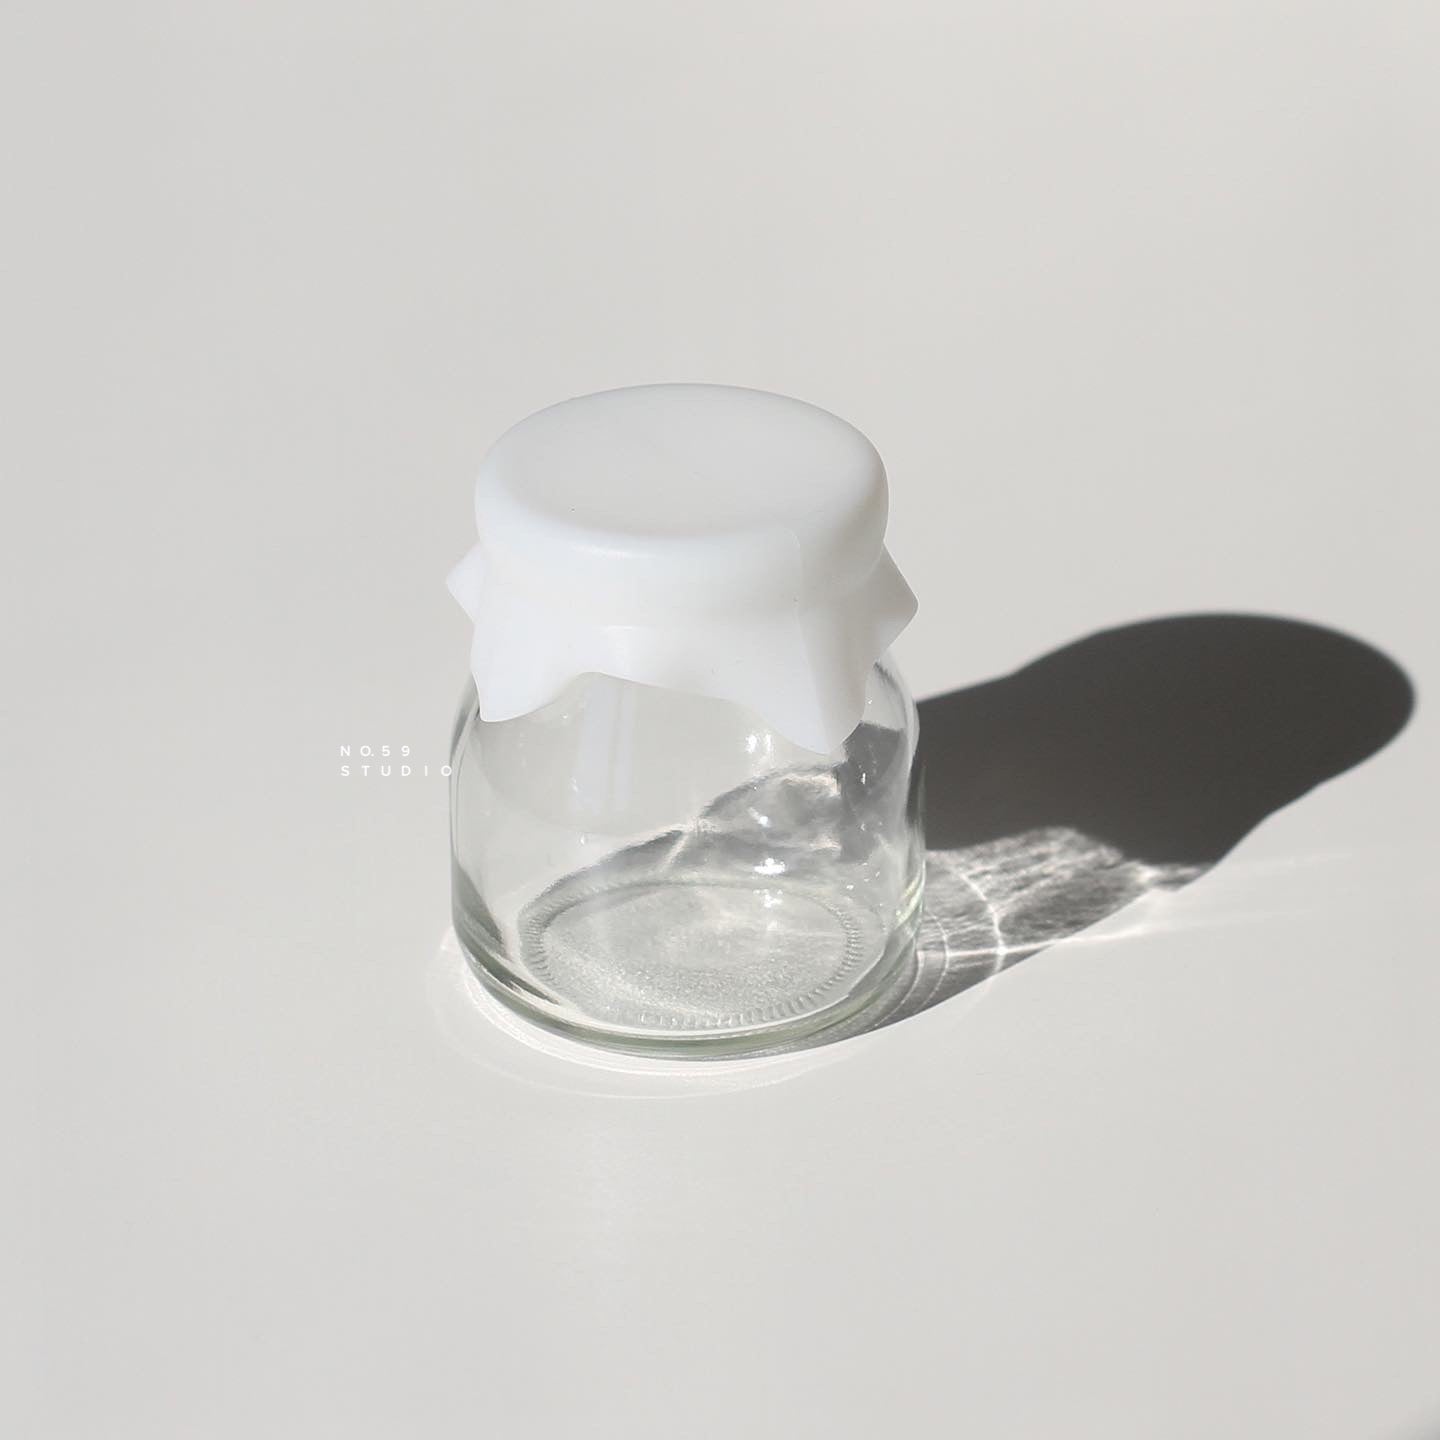 Milk Bottle Glass Storage Jar